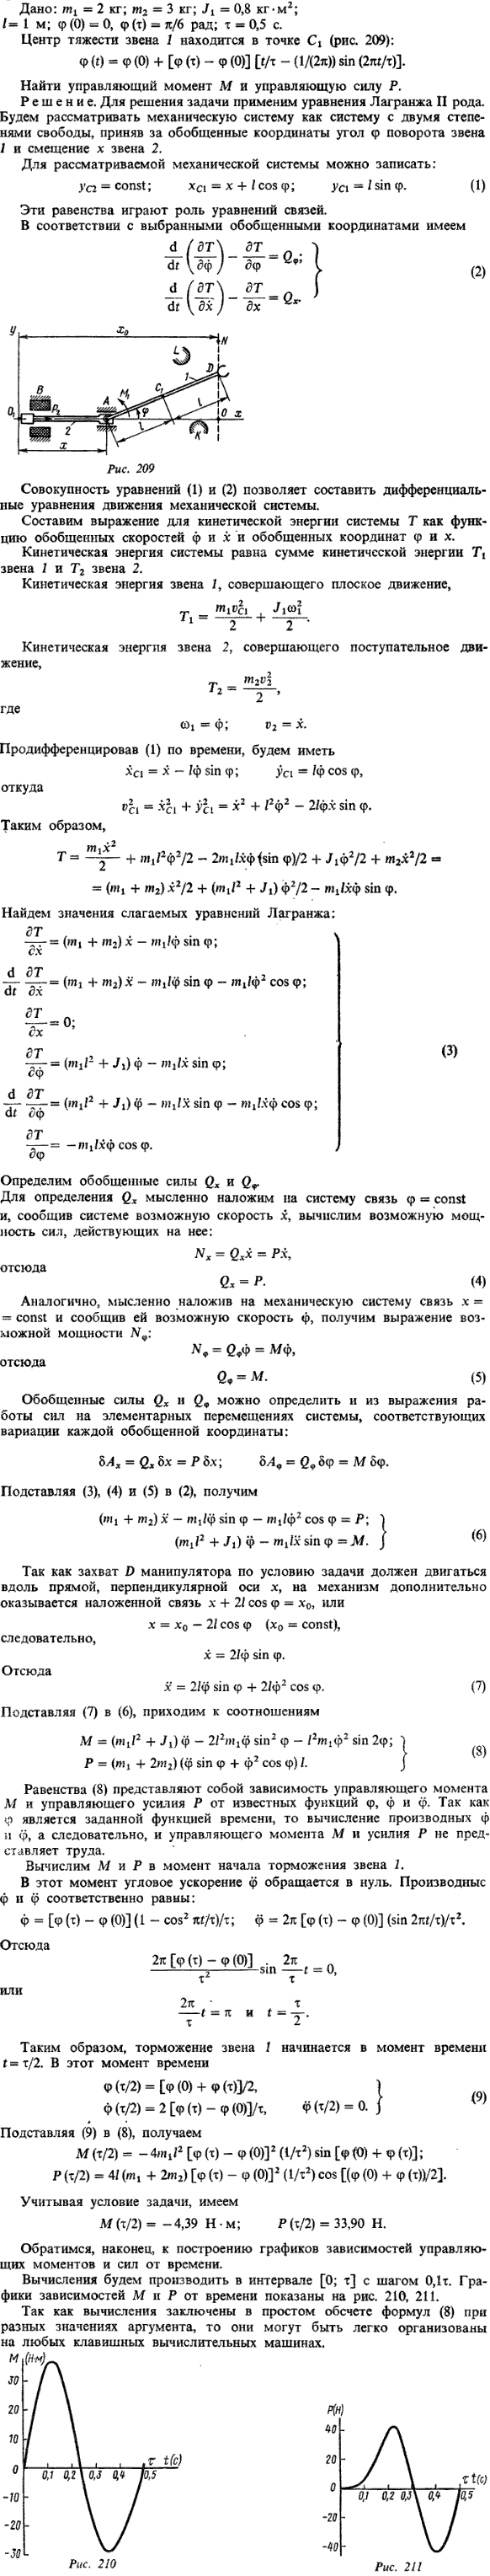 Пример решения Д20 Яблонский. m1 = 2 кг; m2 = 3 кг; J1 = 0,8 кг*м2; l= 1 м; ф(0) = 0,ф (т) = п/6 рад; т = 0,5 c. Центр тяжести звена 1 ..., Задача 15187, Теоретическая механика